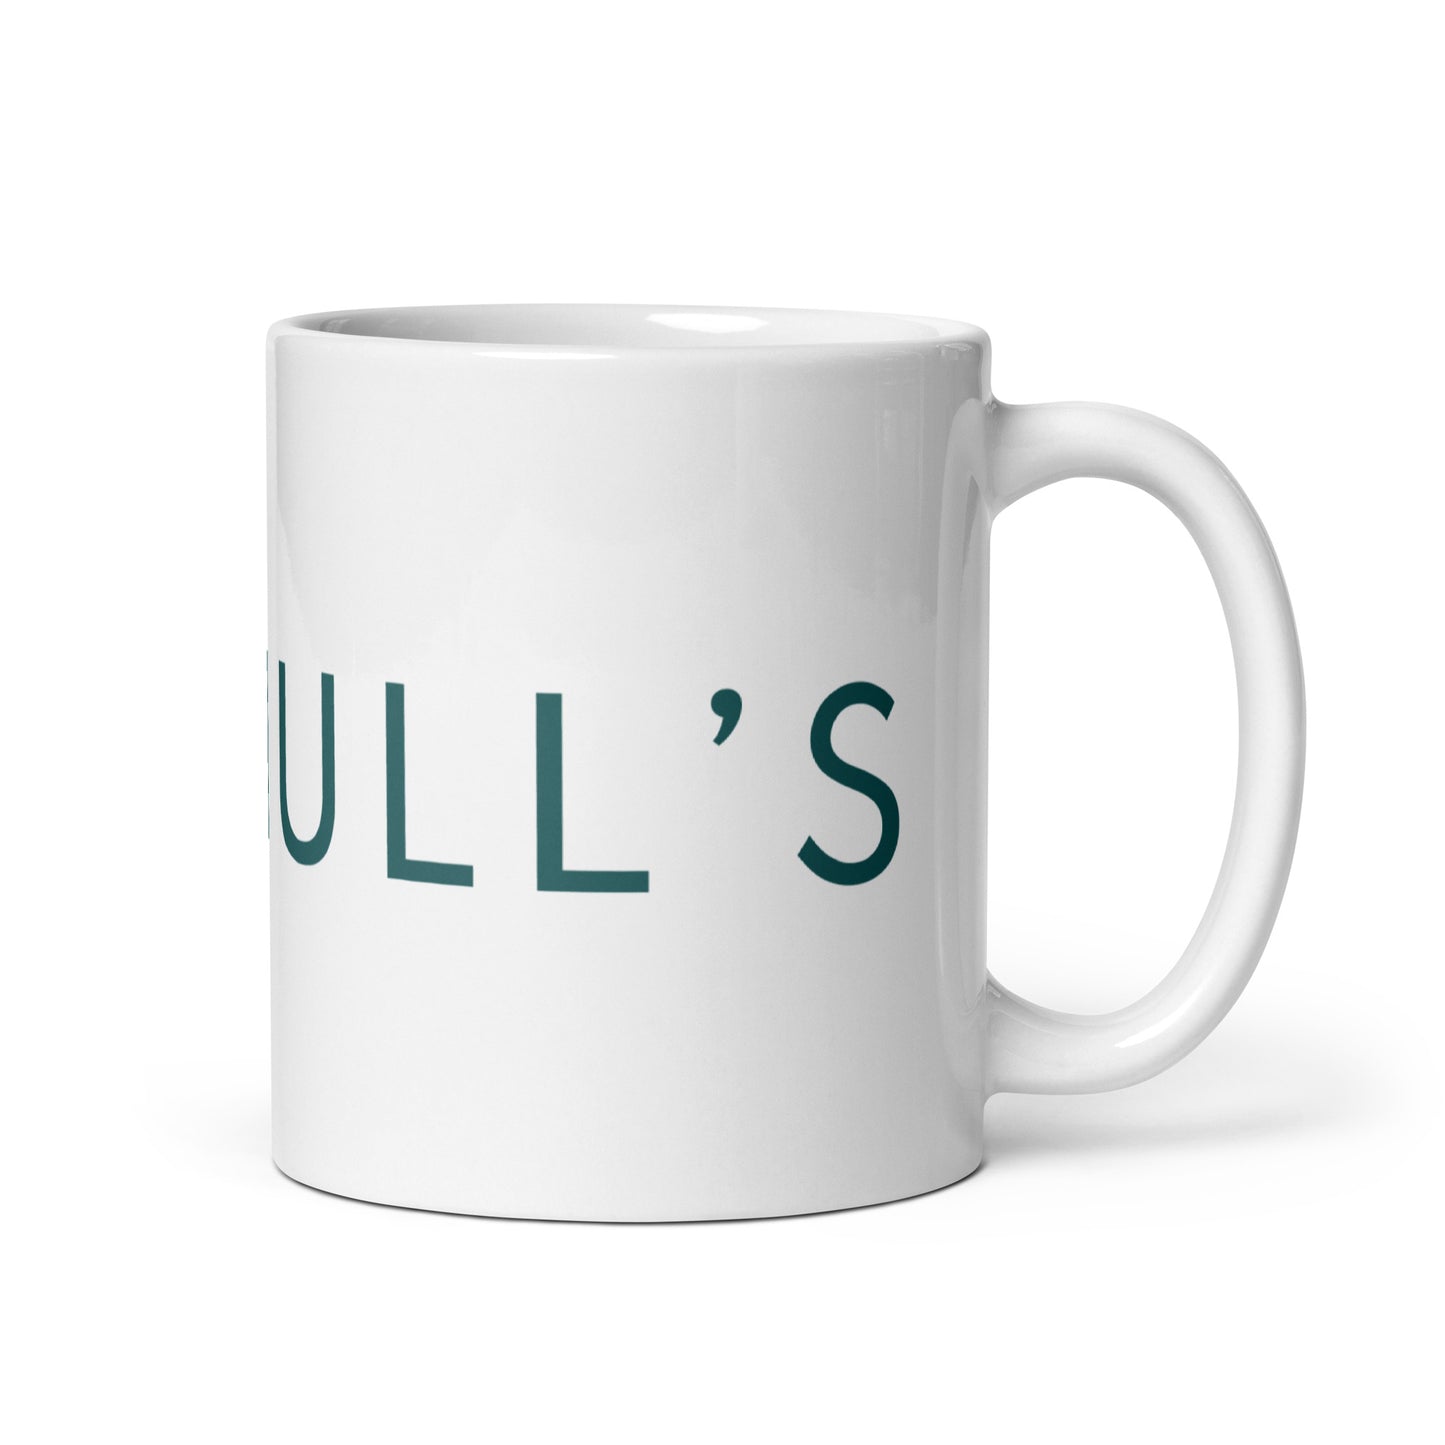 Solihull’s Mug